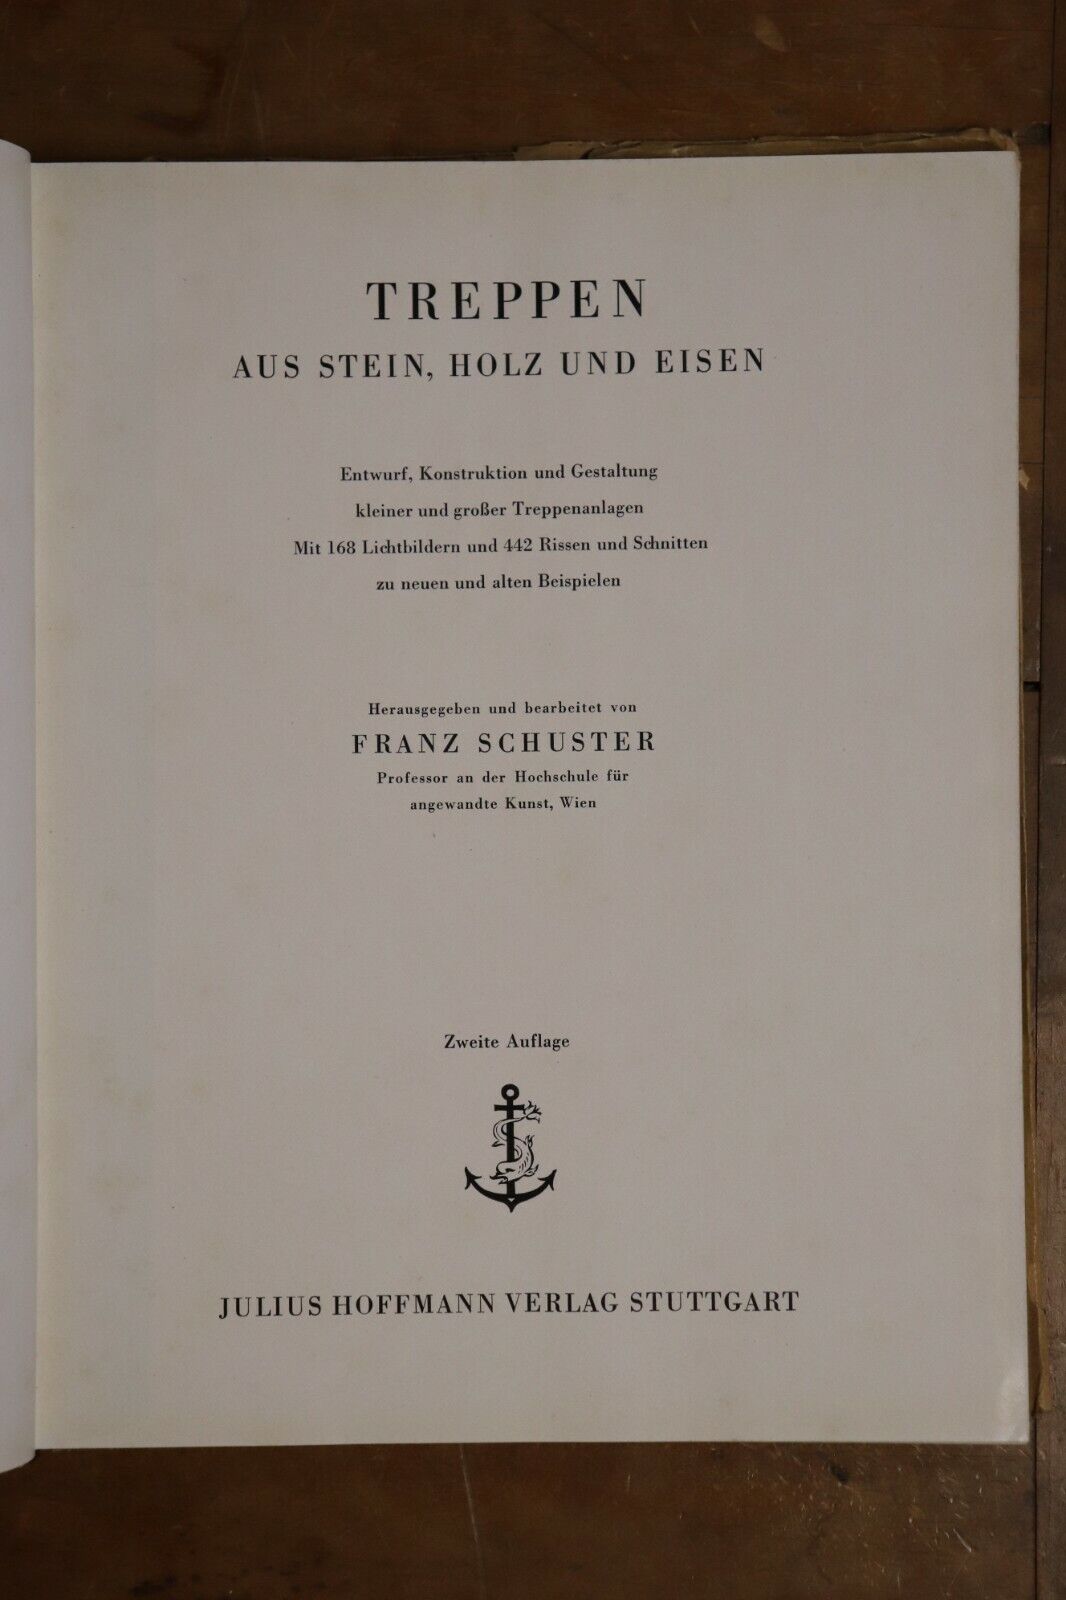 Treppen Aus Stein Holz Und Eisen - 1949 - Antique German Architecture Book - 0